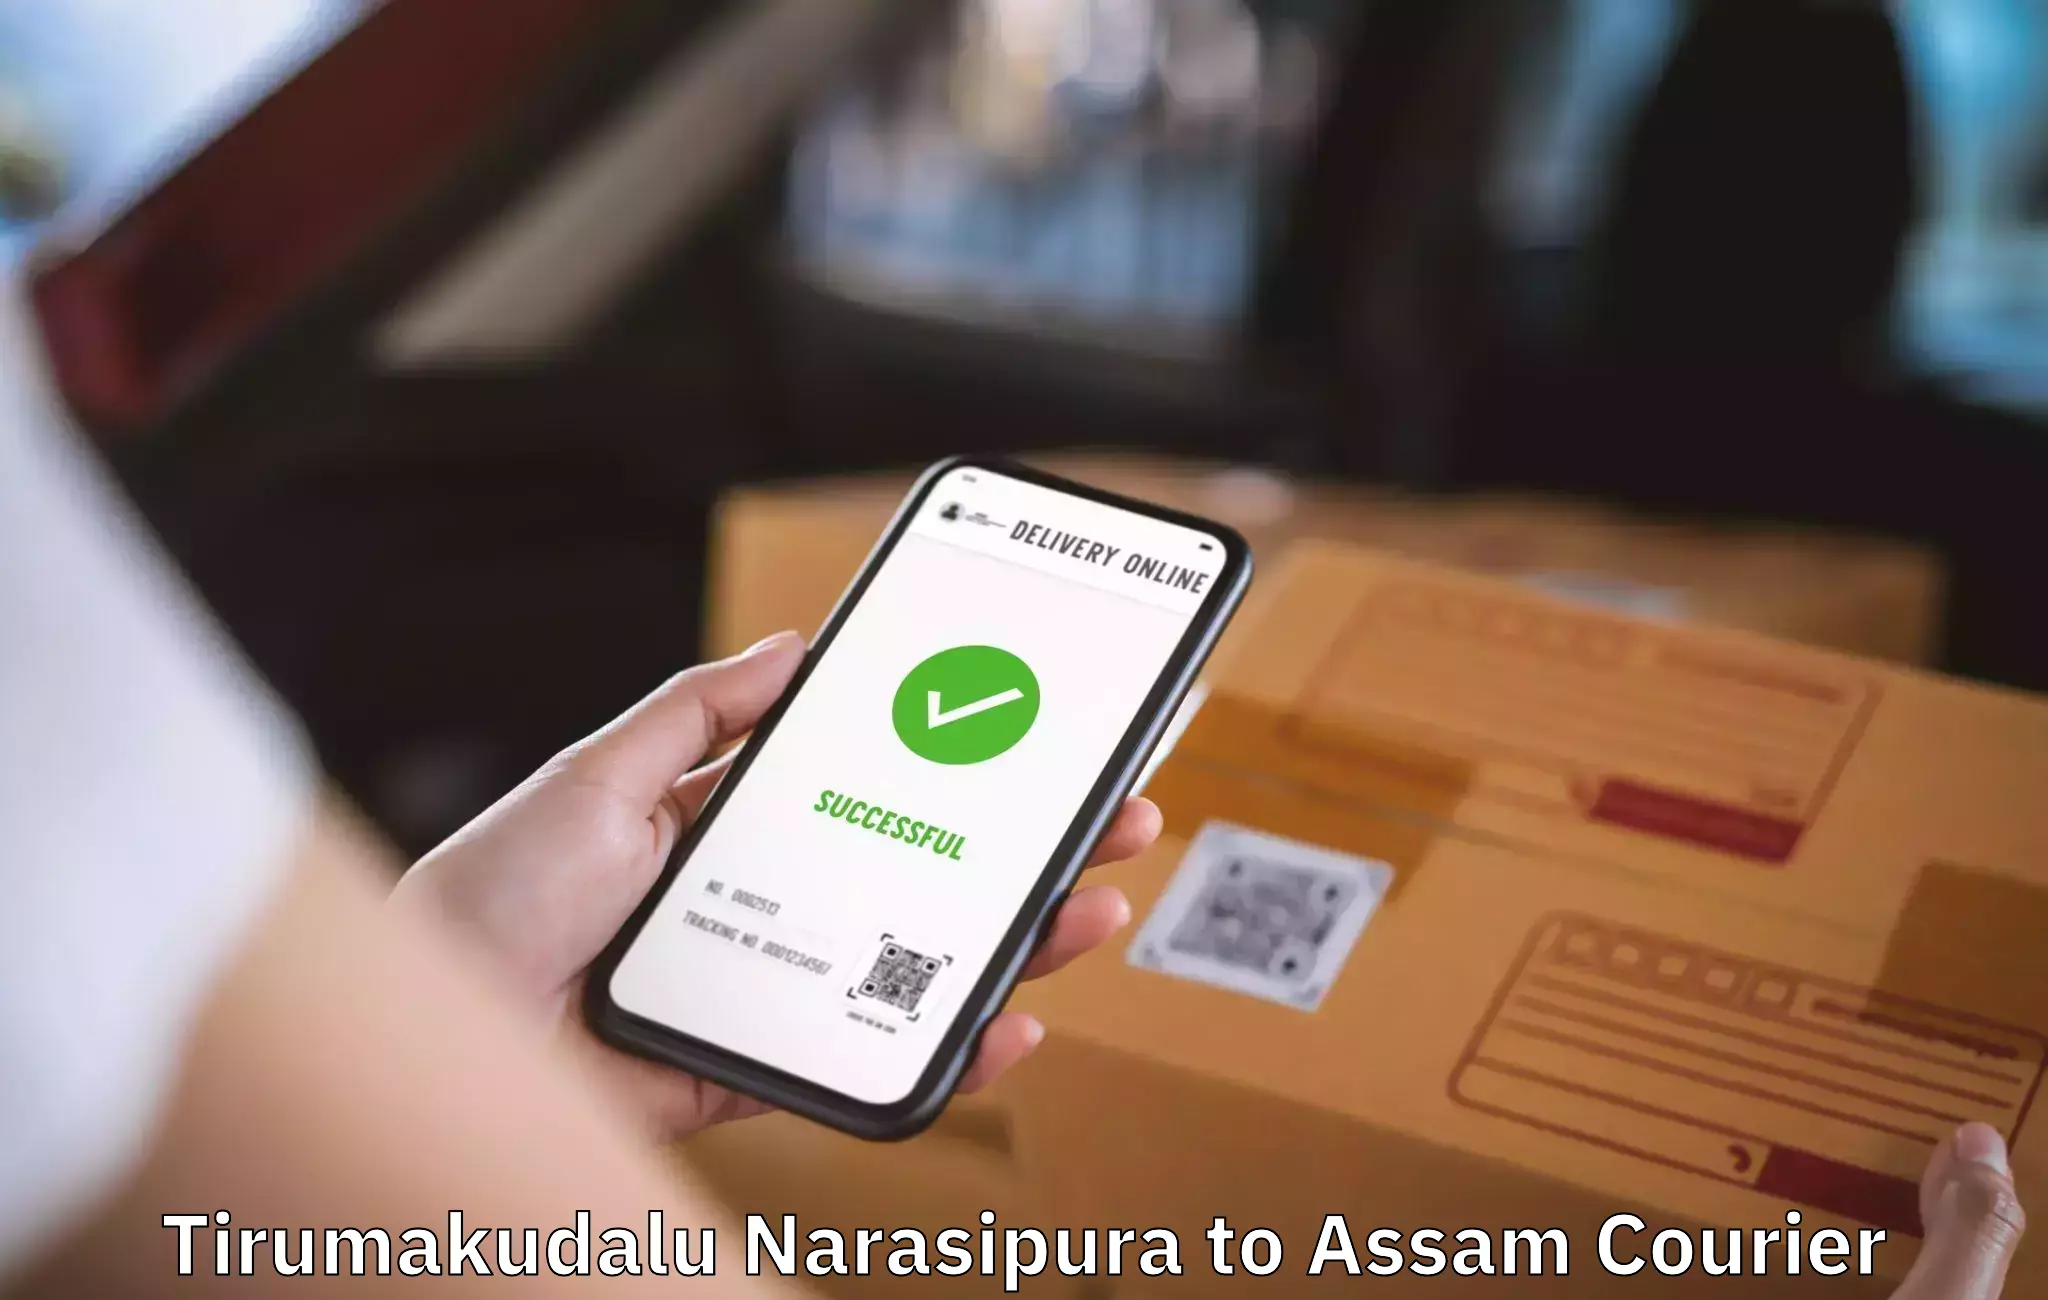 Household logistics services Tirumakudalu Narasipura to Kokrajhar